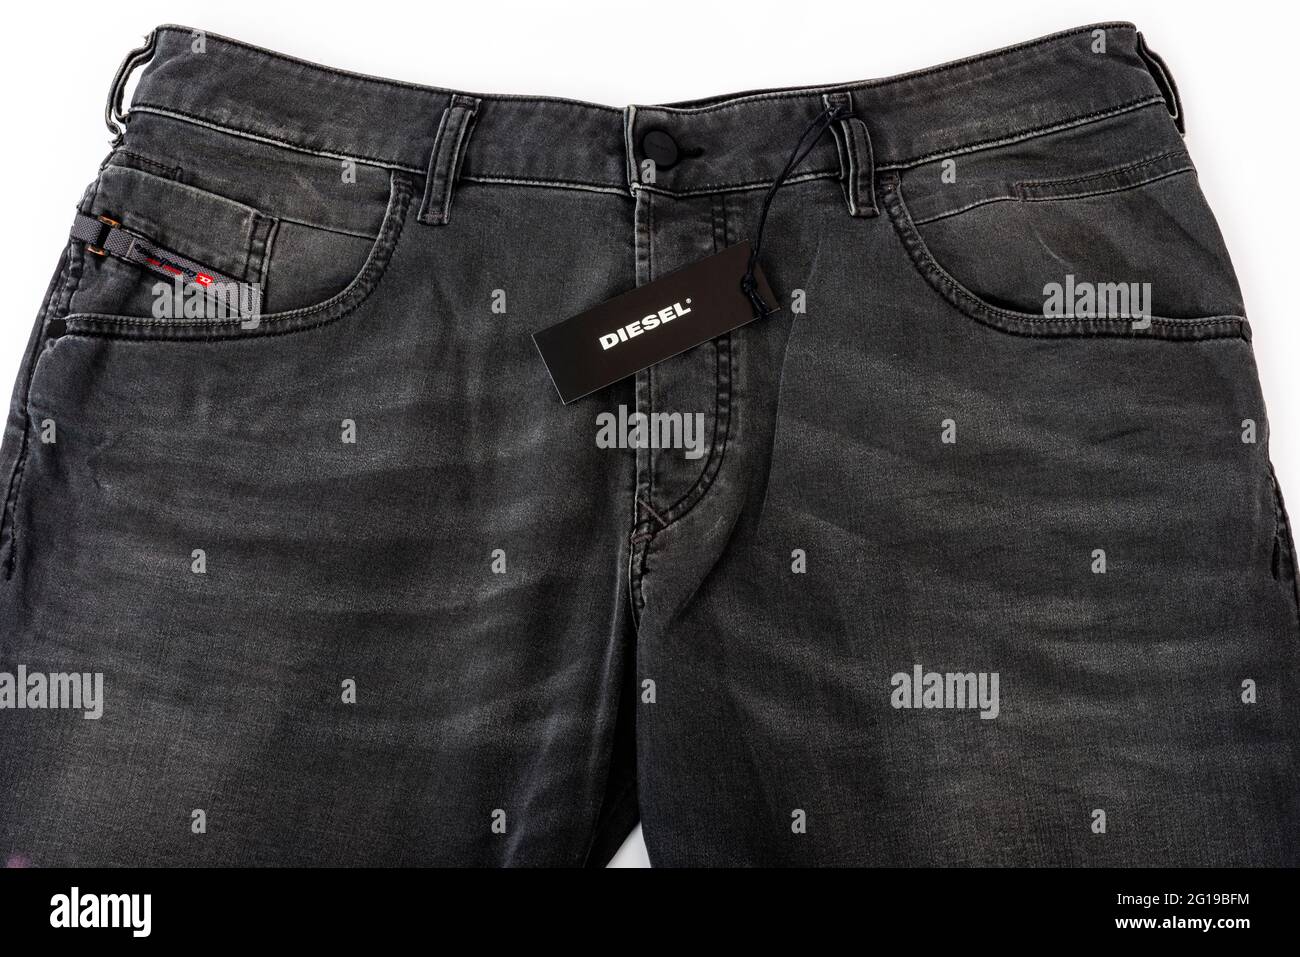 Mens Diesel jeans Stock Photo -